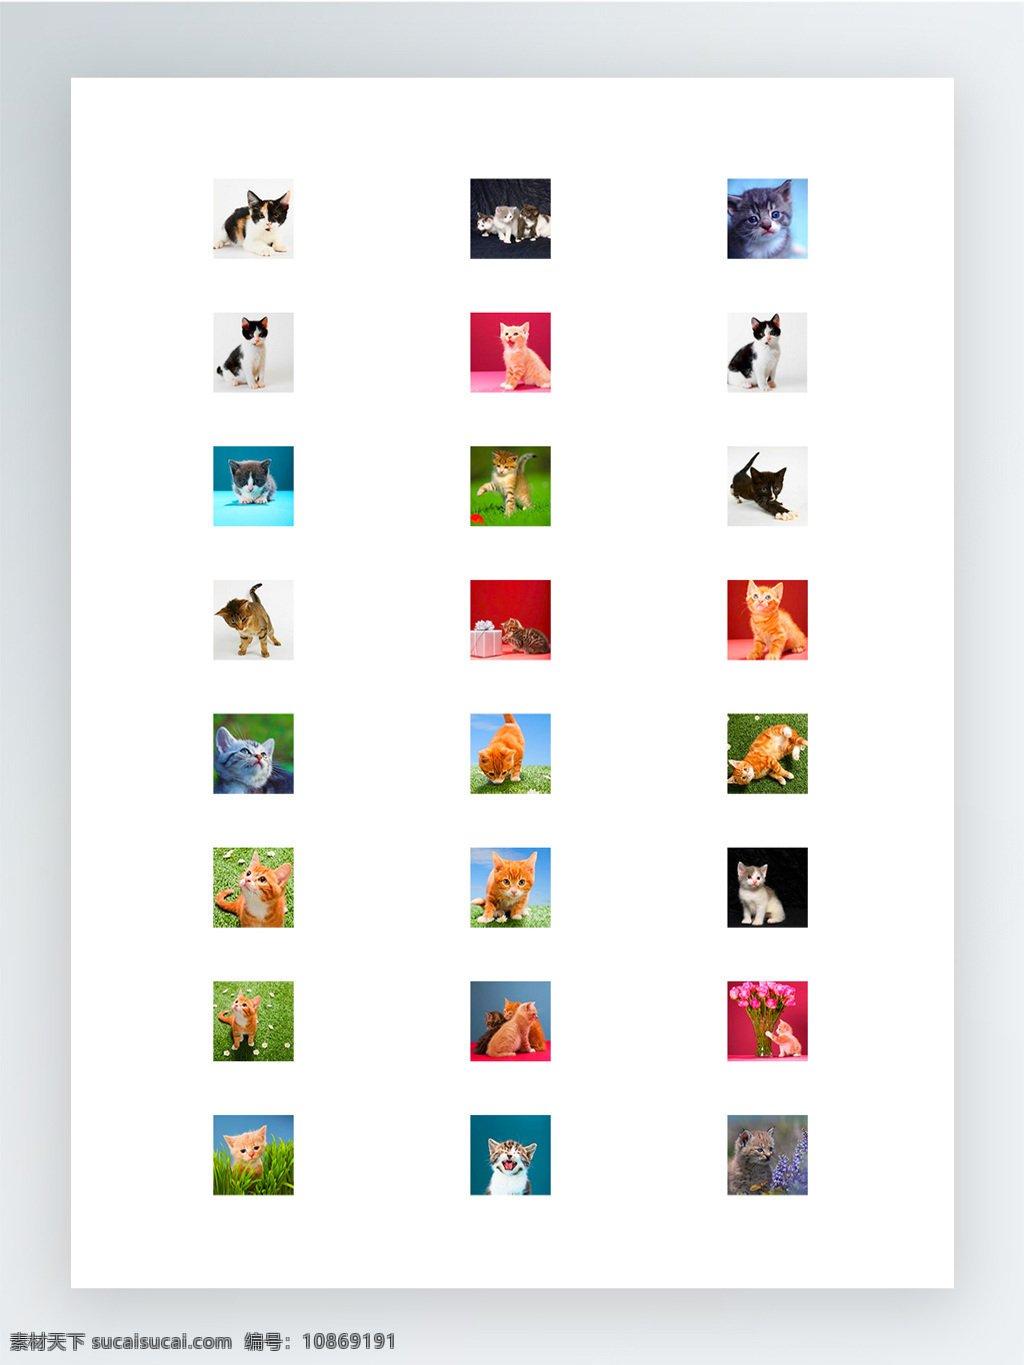 超 可爱 猫咪 摄影作品 图标 集 超萌 超可爱 图标集